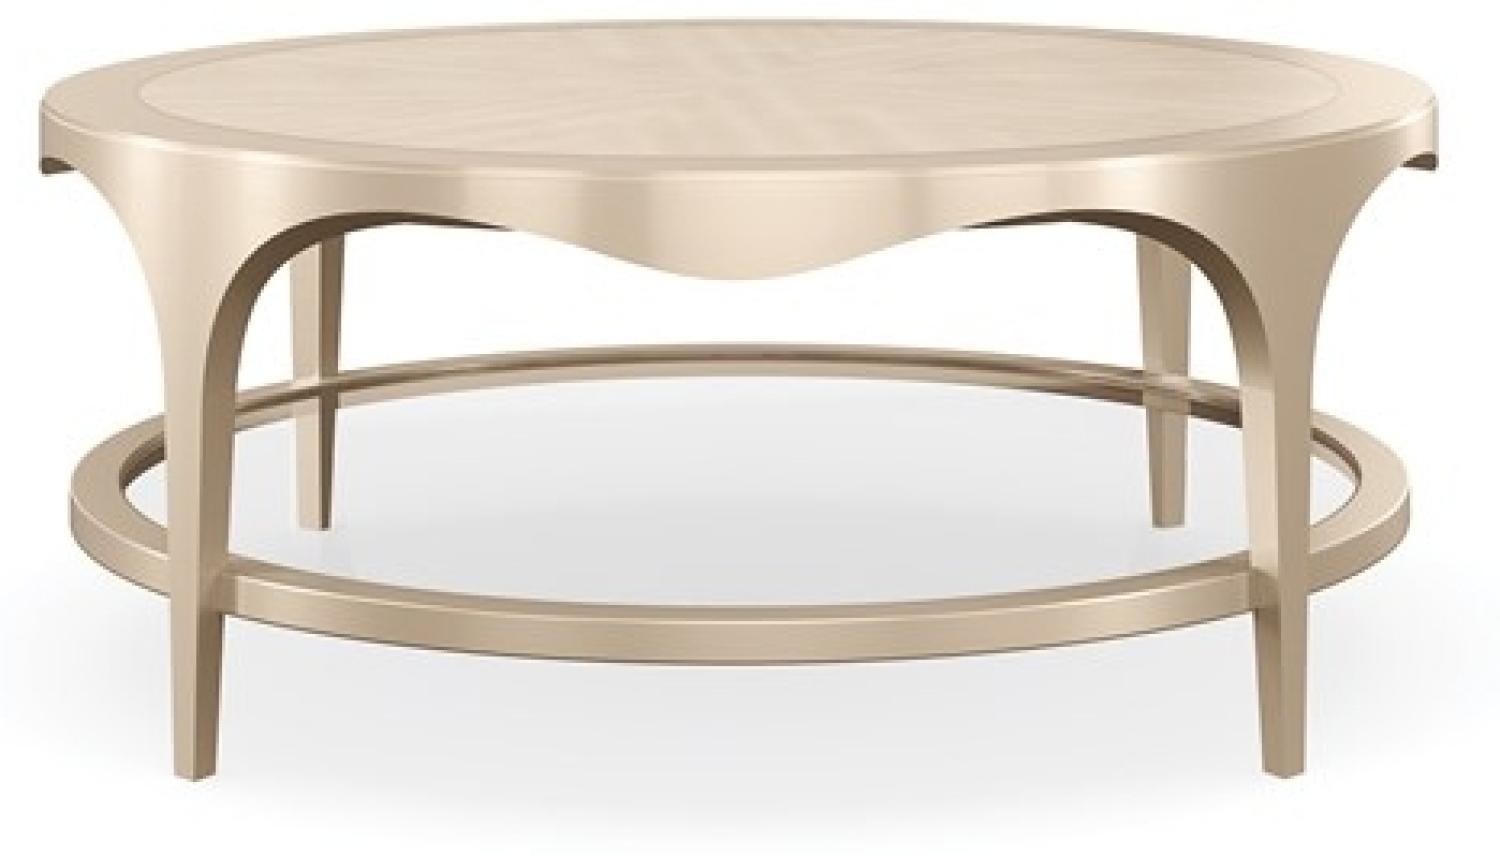 Wohnzimmer Möbel Tisch Couchtisch Design Luxus Einrichtung Holz Tische Oval Rund Bild 1